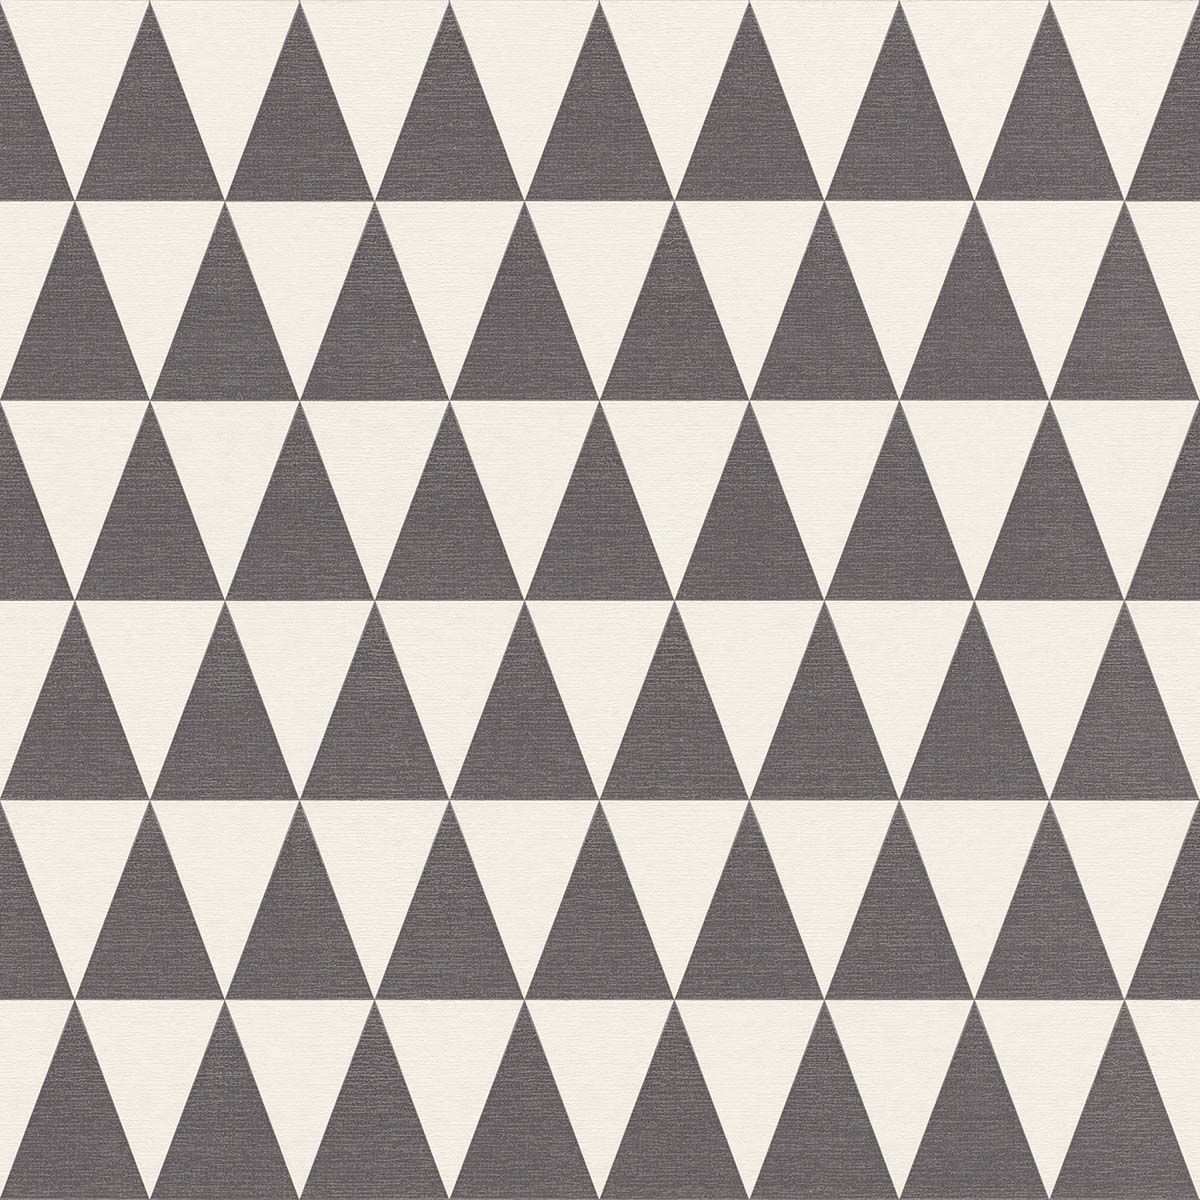 Vliestapete Dreieck Muster Schwarz Weiss 148672 Rasch Textil Tapeten Ausgefallene Tapeten